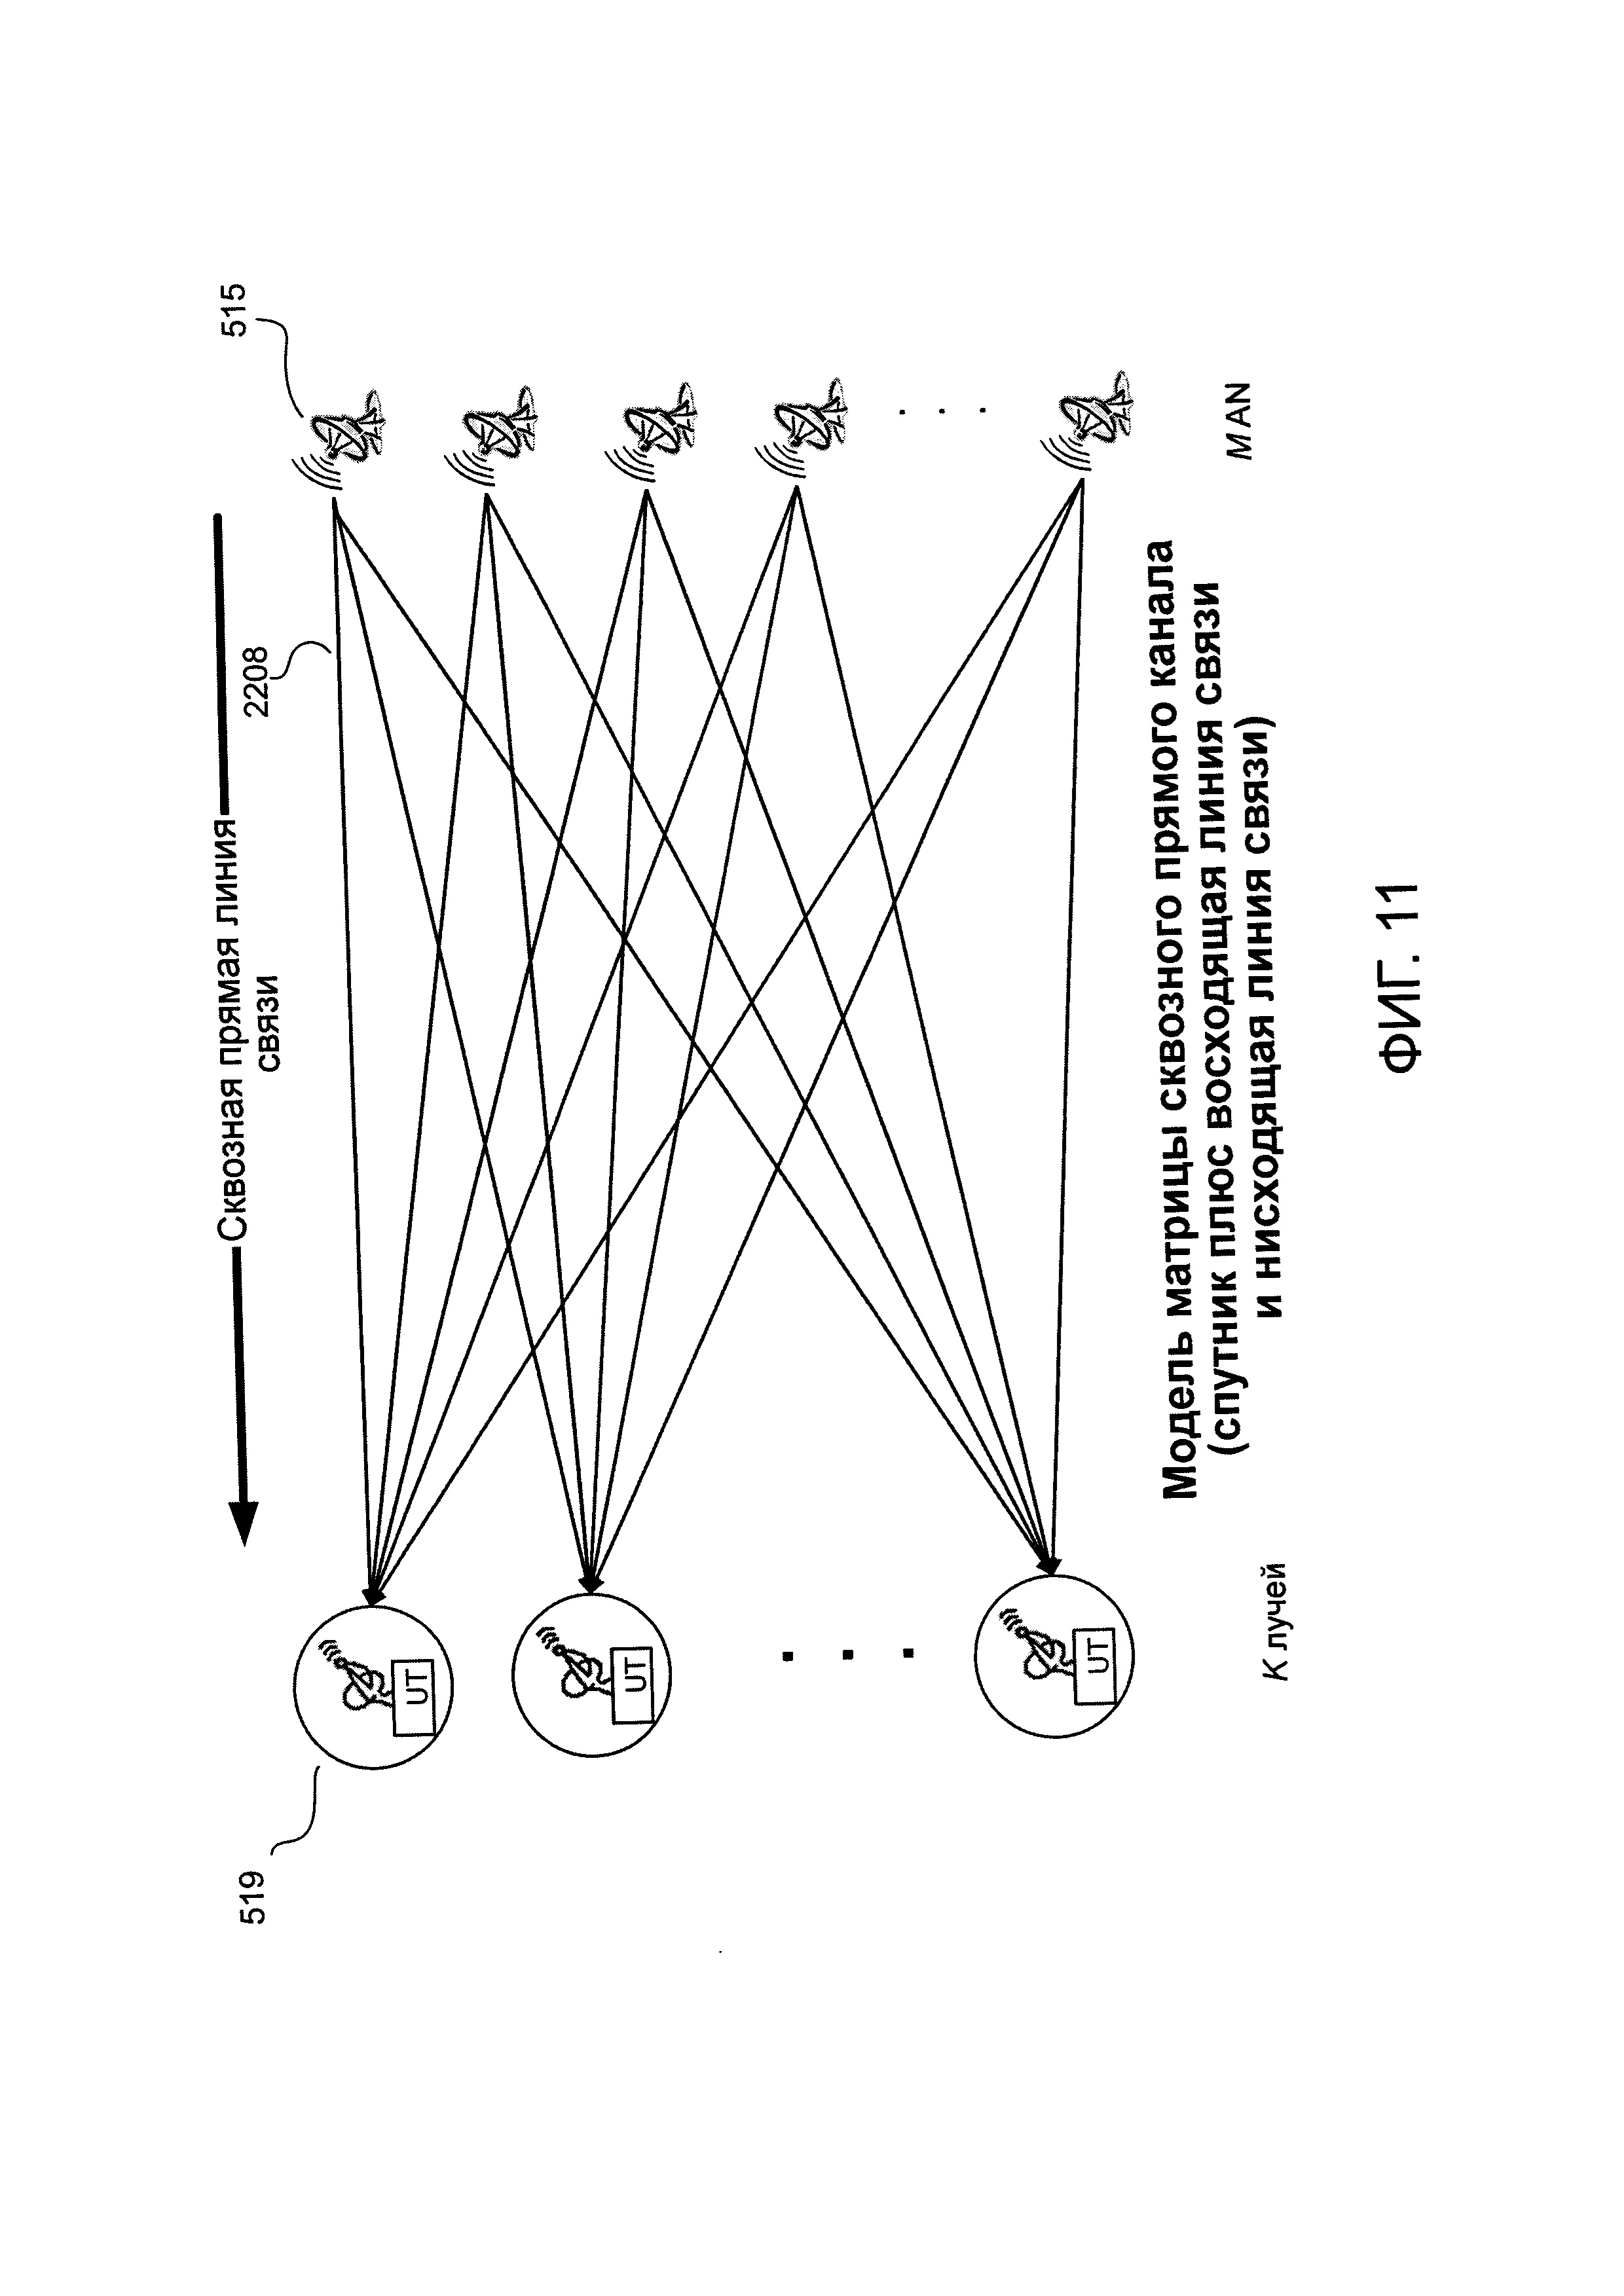 Формирование луча наземной антенны для связи между узлами доступа и пользовательскими терминалами, связанными с помощью ретранслятора, такого как спутник